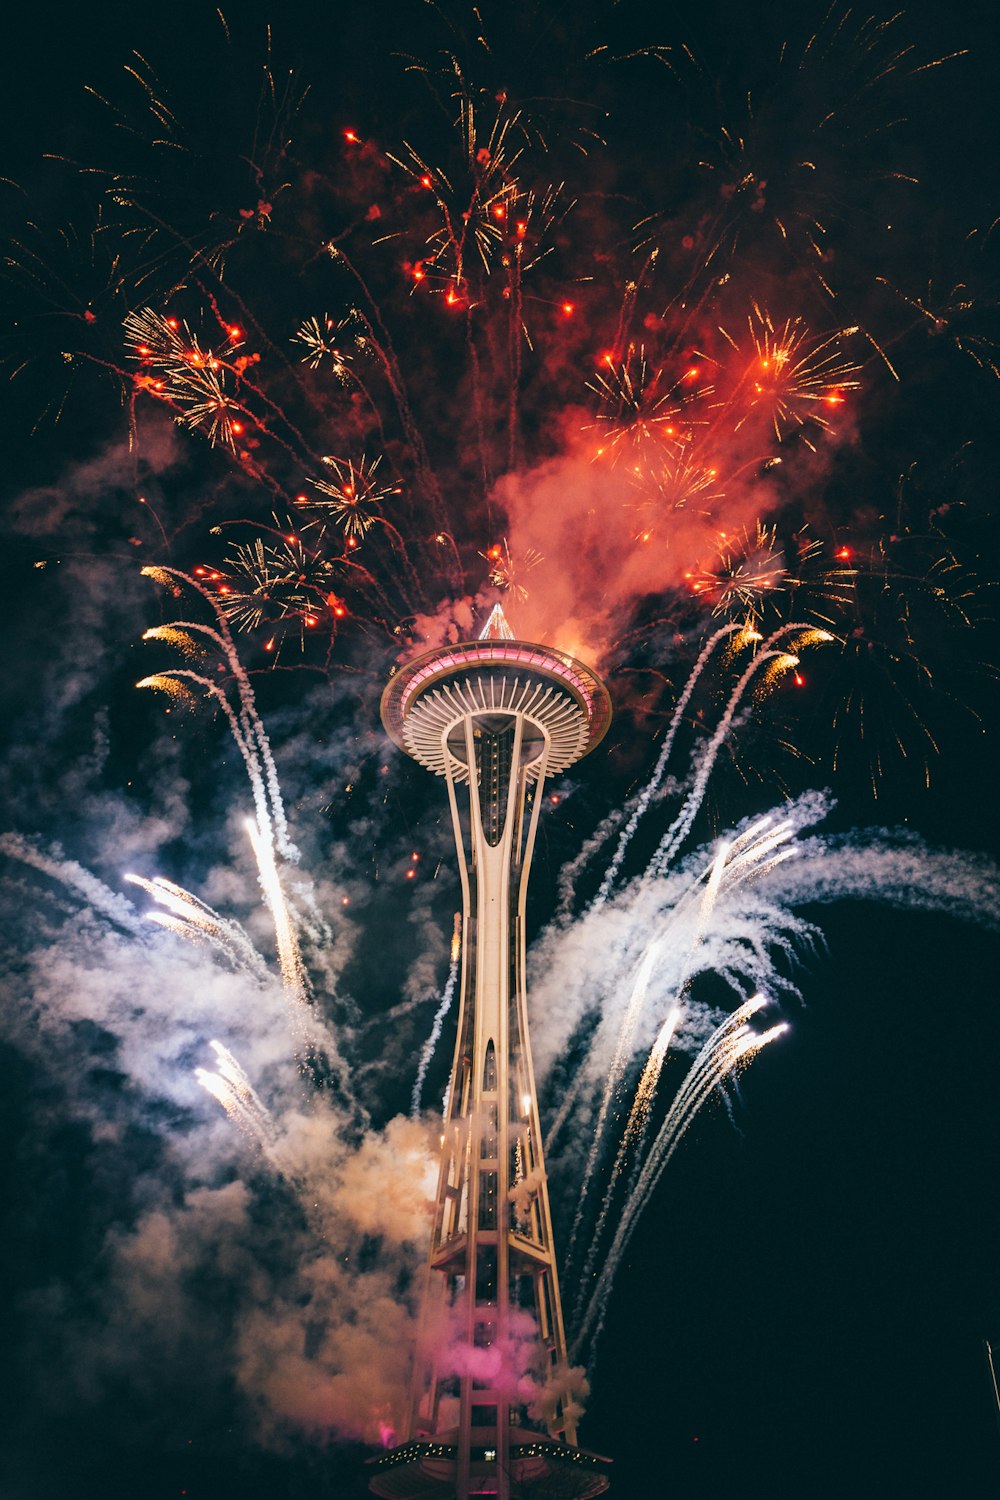 Space Needle, Seattle rodeado de fuegos artificiales